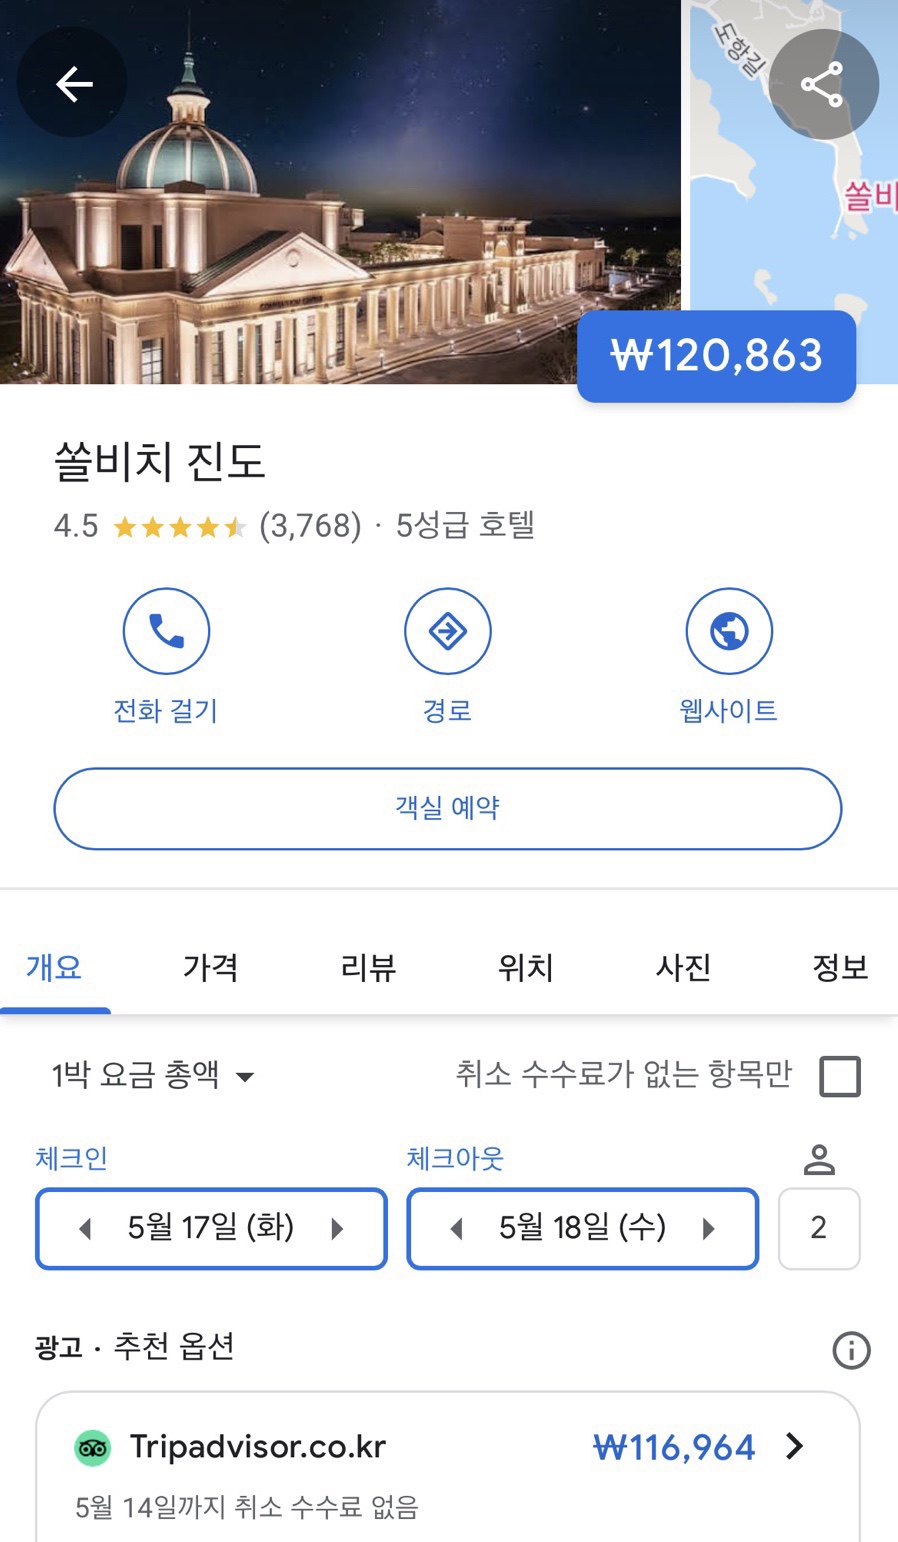 여름휴가지 추천 진도쏠비치 호텔 & 리조트 구글호텔 특가 소개